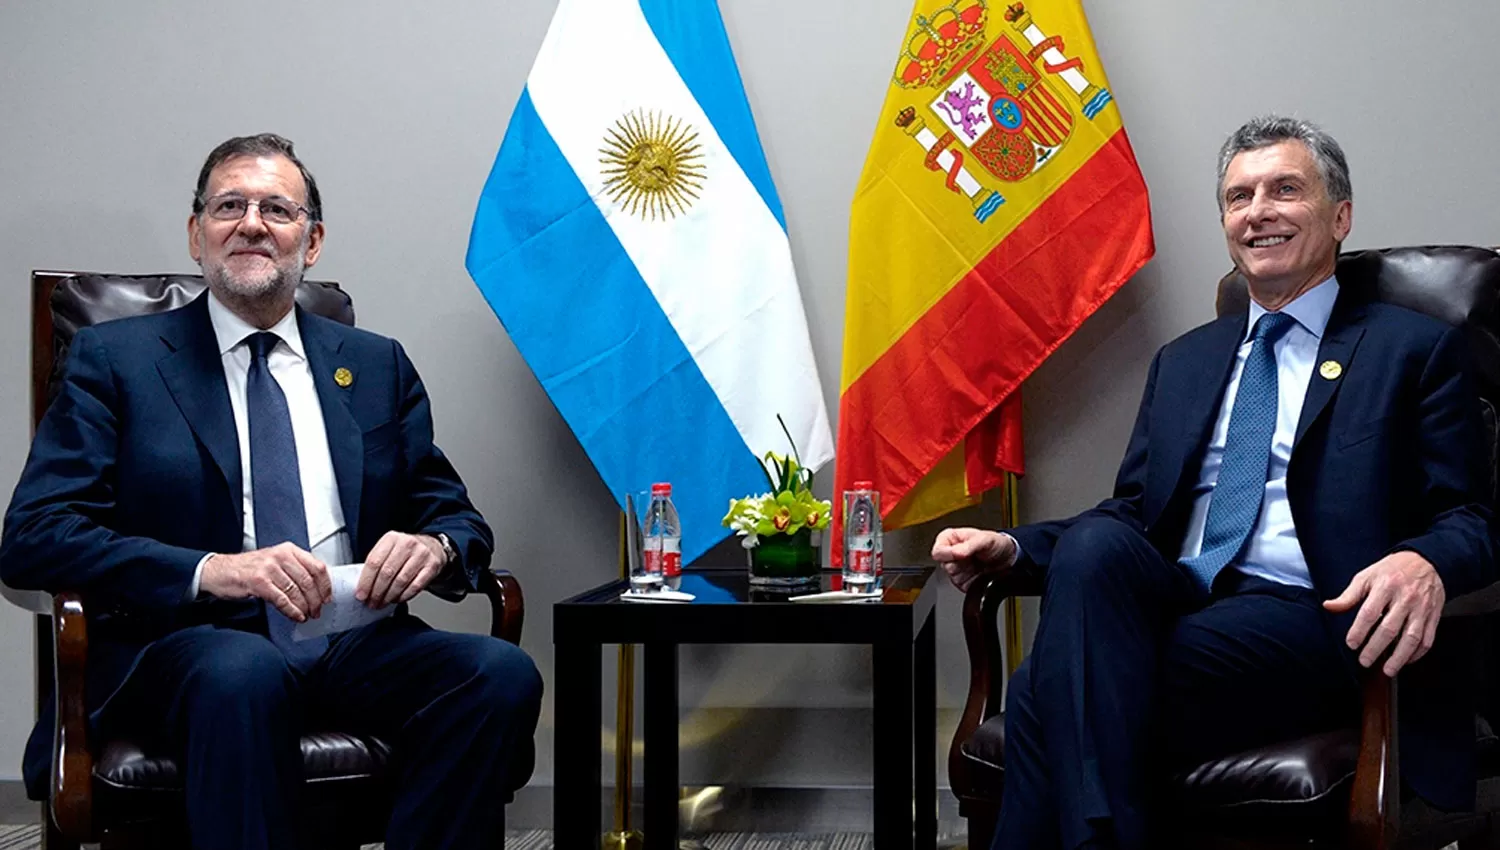 RAJOY Y MACRI. El presidente español llegó para reunirse con Macri. FOTO TOMADA DE TELAM